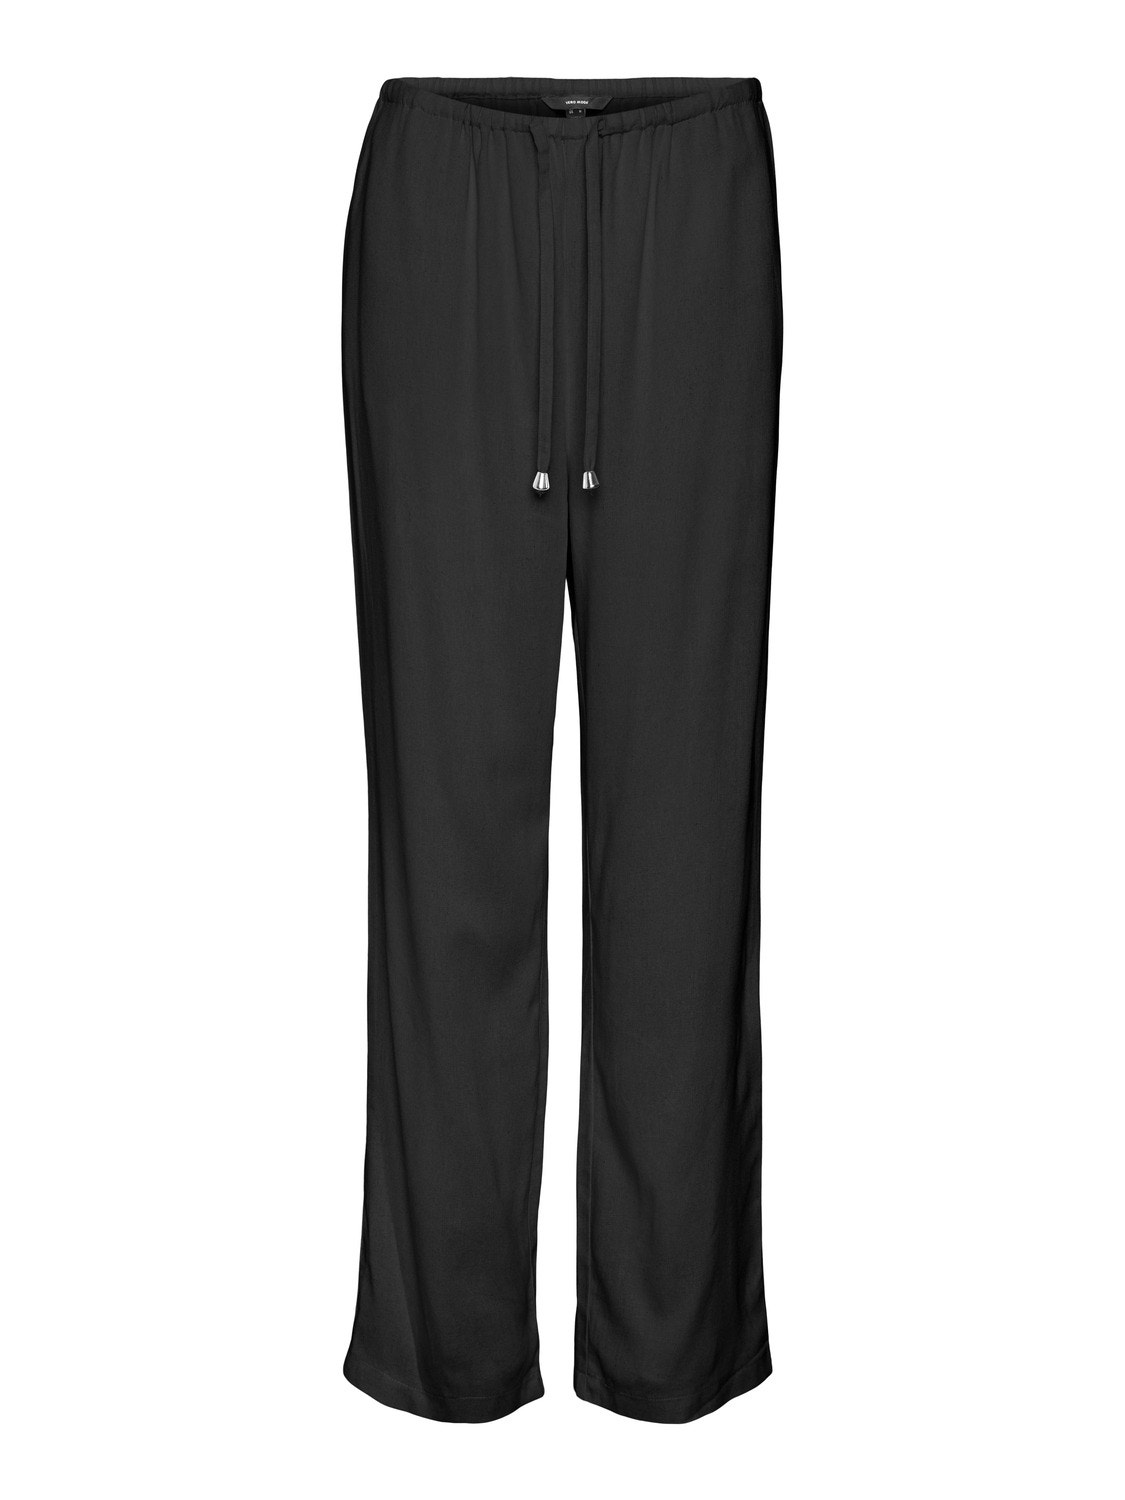 Vero Moda VMDINNA Mid waist Trousers -Black - 10313929